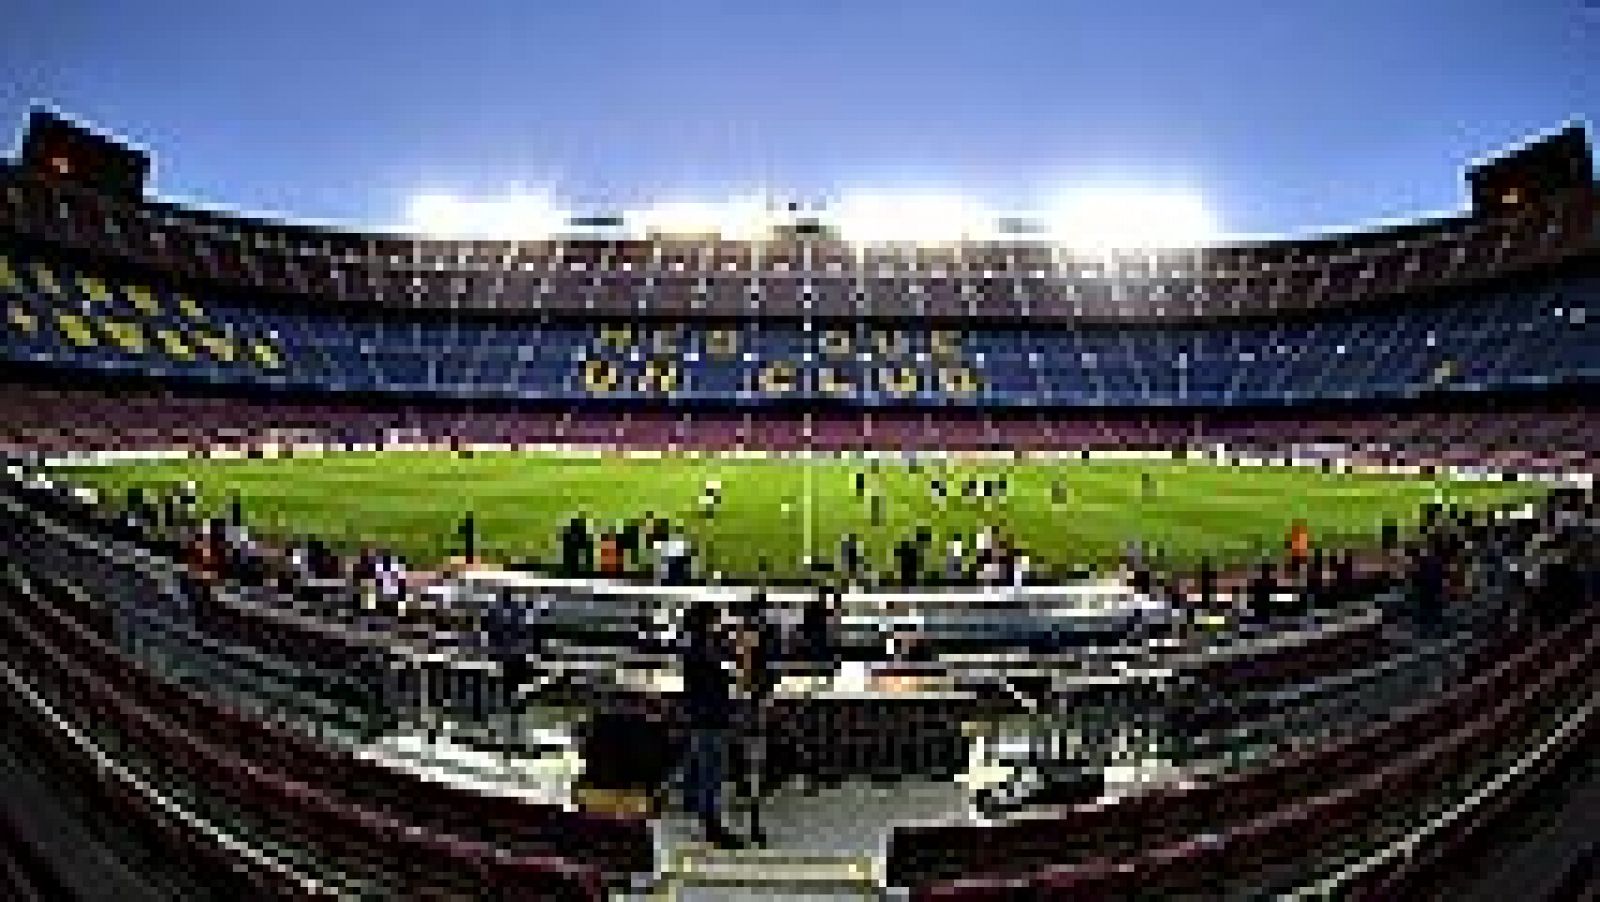 El Camp Nou será la sede de la final de la Copa del Rey entre el Barcelona y el Athletic Club de Bilbao el próximo 30 de mayo, según anunció Antonio Suárez Santana, presidente de competiciones organizadas por la Real Federación Española de Fútbol, tr